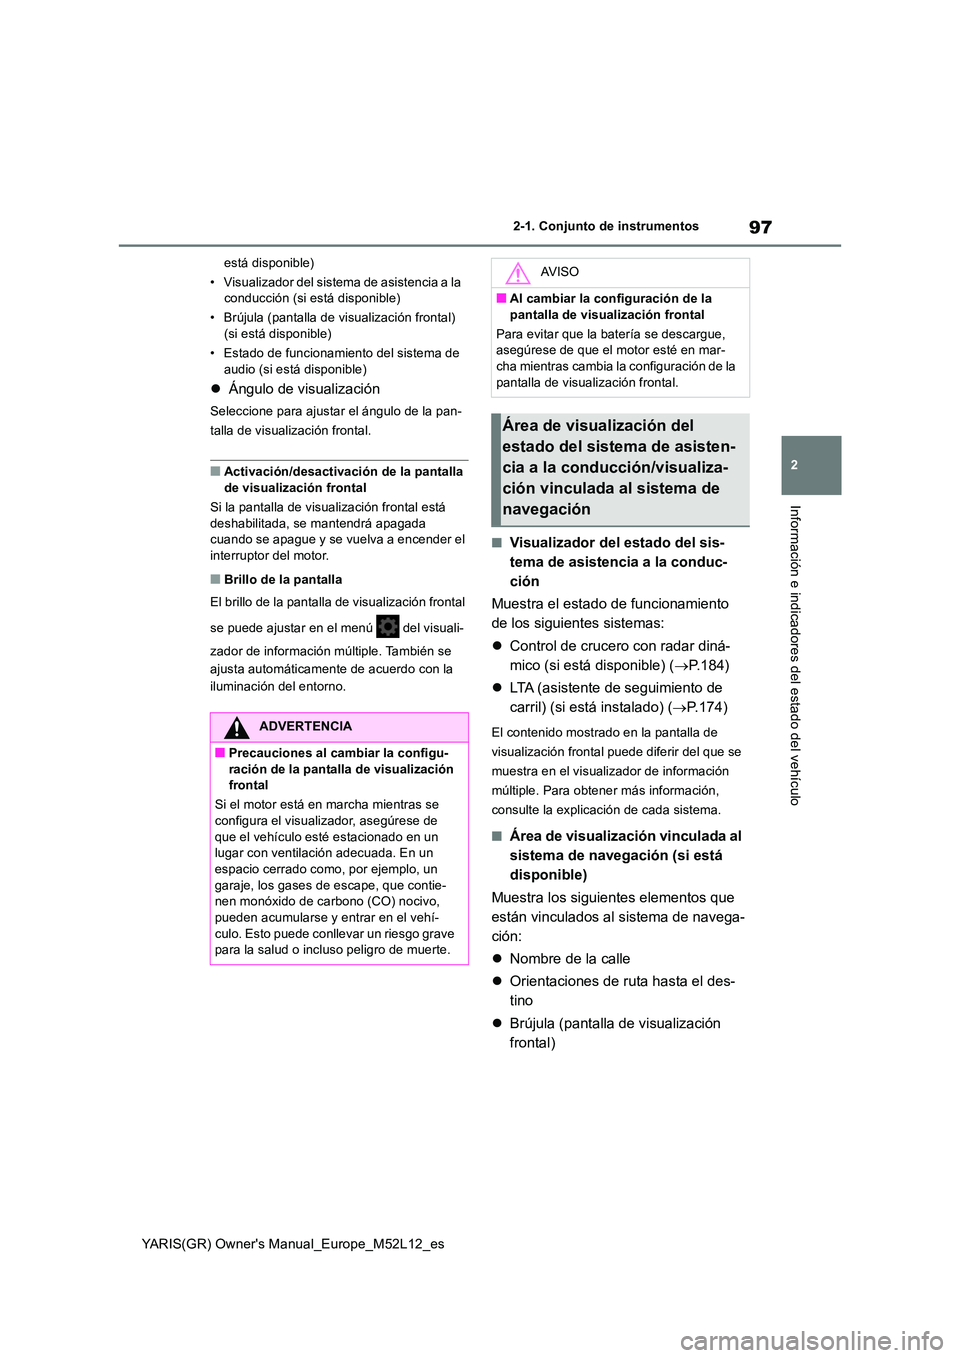 TOYOTA GR YARIS 2020  Manuale de Empleo (in Spanish) 97
2
YARIS(GR) Owners Manual_Europe_M52L12_es
2-1. Conjunto de instrumentos
Información e indicadores del estado del vehículo
está disponible) 
• Visualizador del sistema de asistencia a la  con